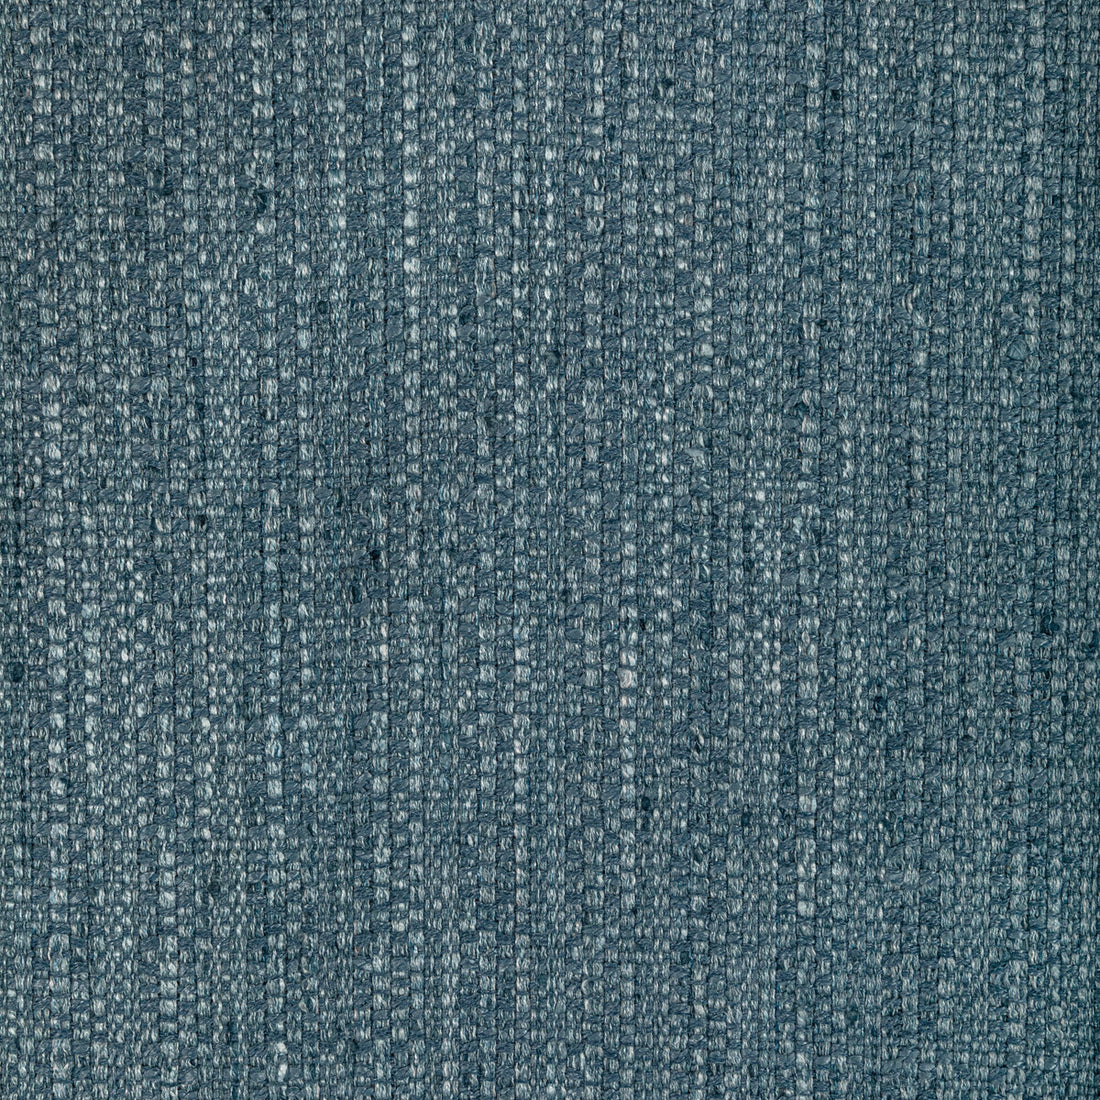 Kravet Basics fabric in 36554-505 color - pattern 36554.505.0 - by Kravet Basics